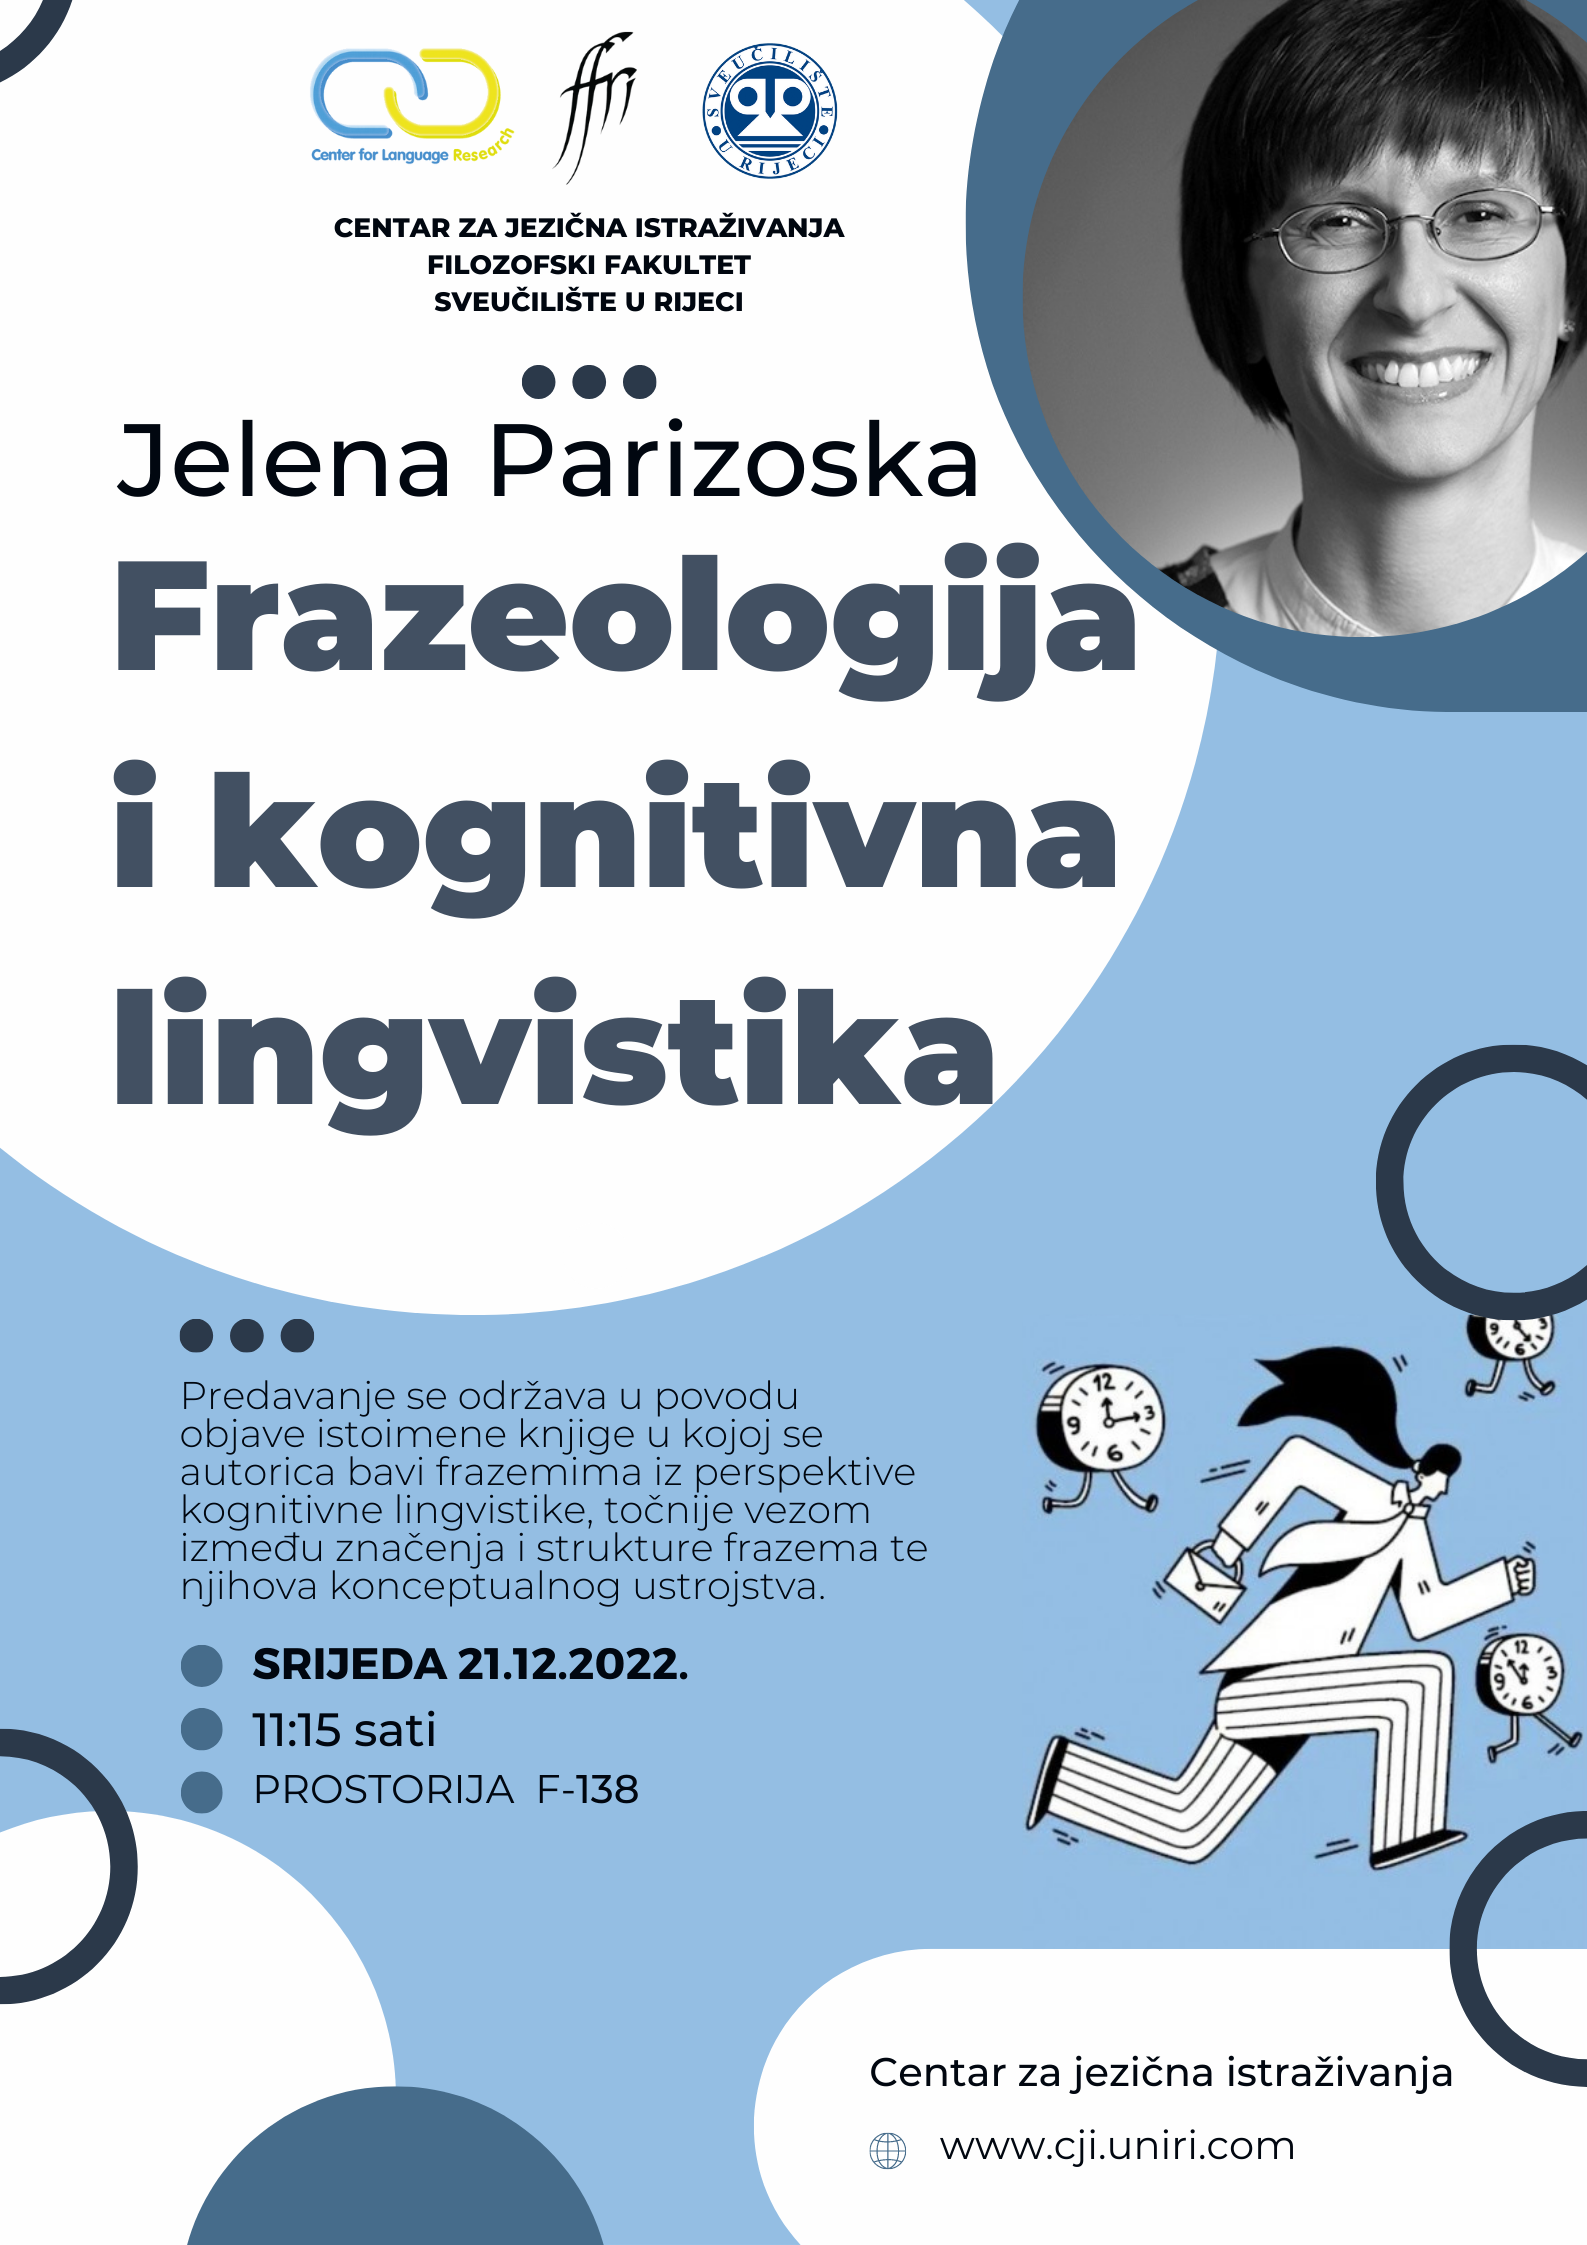 CJI predavanje: Jelena Parizoska: “Frazeologija i kognitivna lingvistika”. 21. 12.2022., 11:15 (F-138)